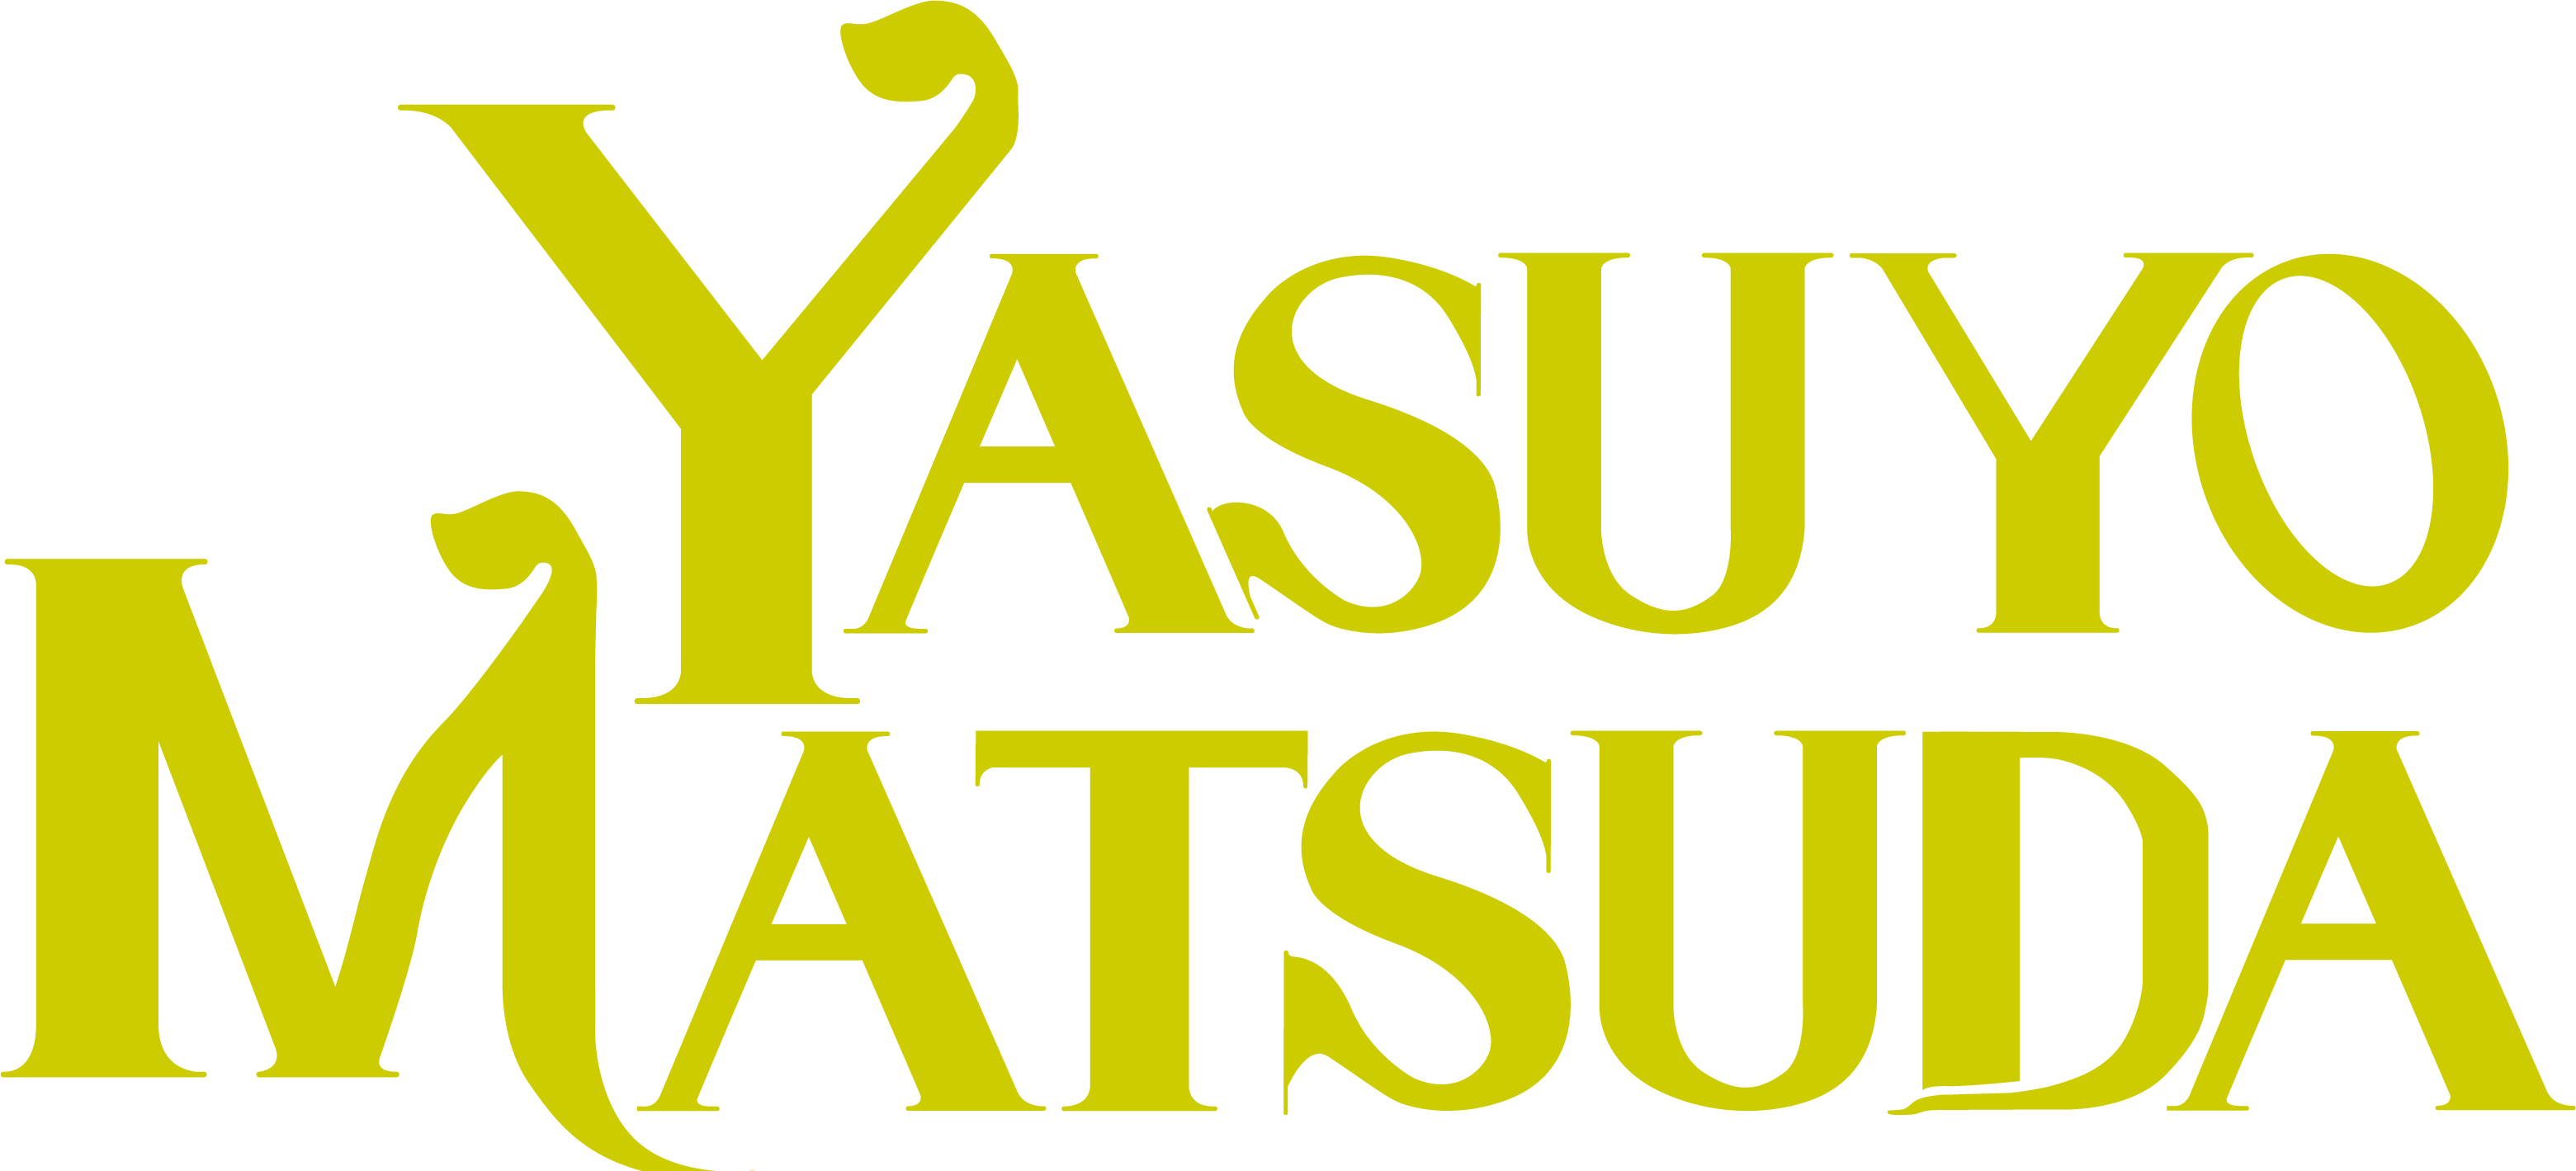 Yasuyo Matsuda